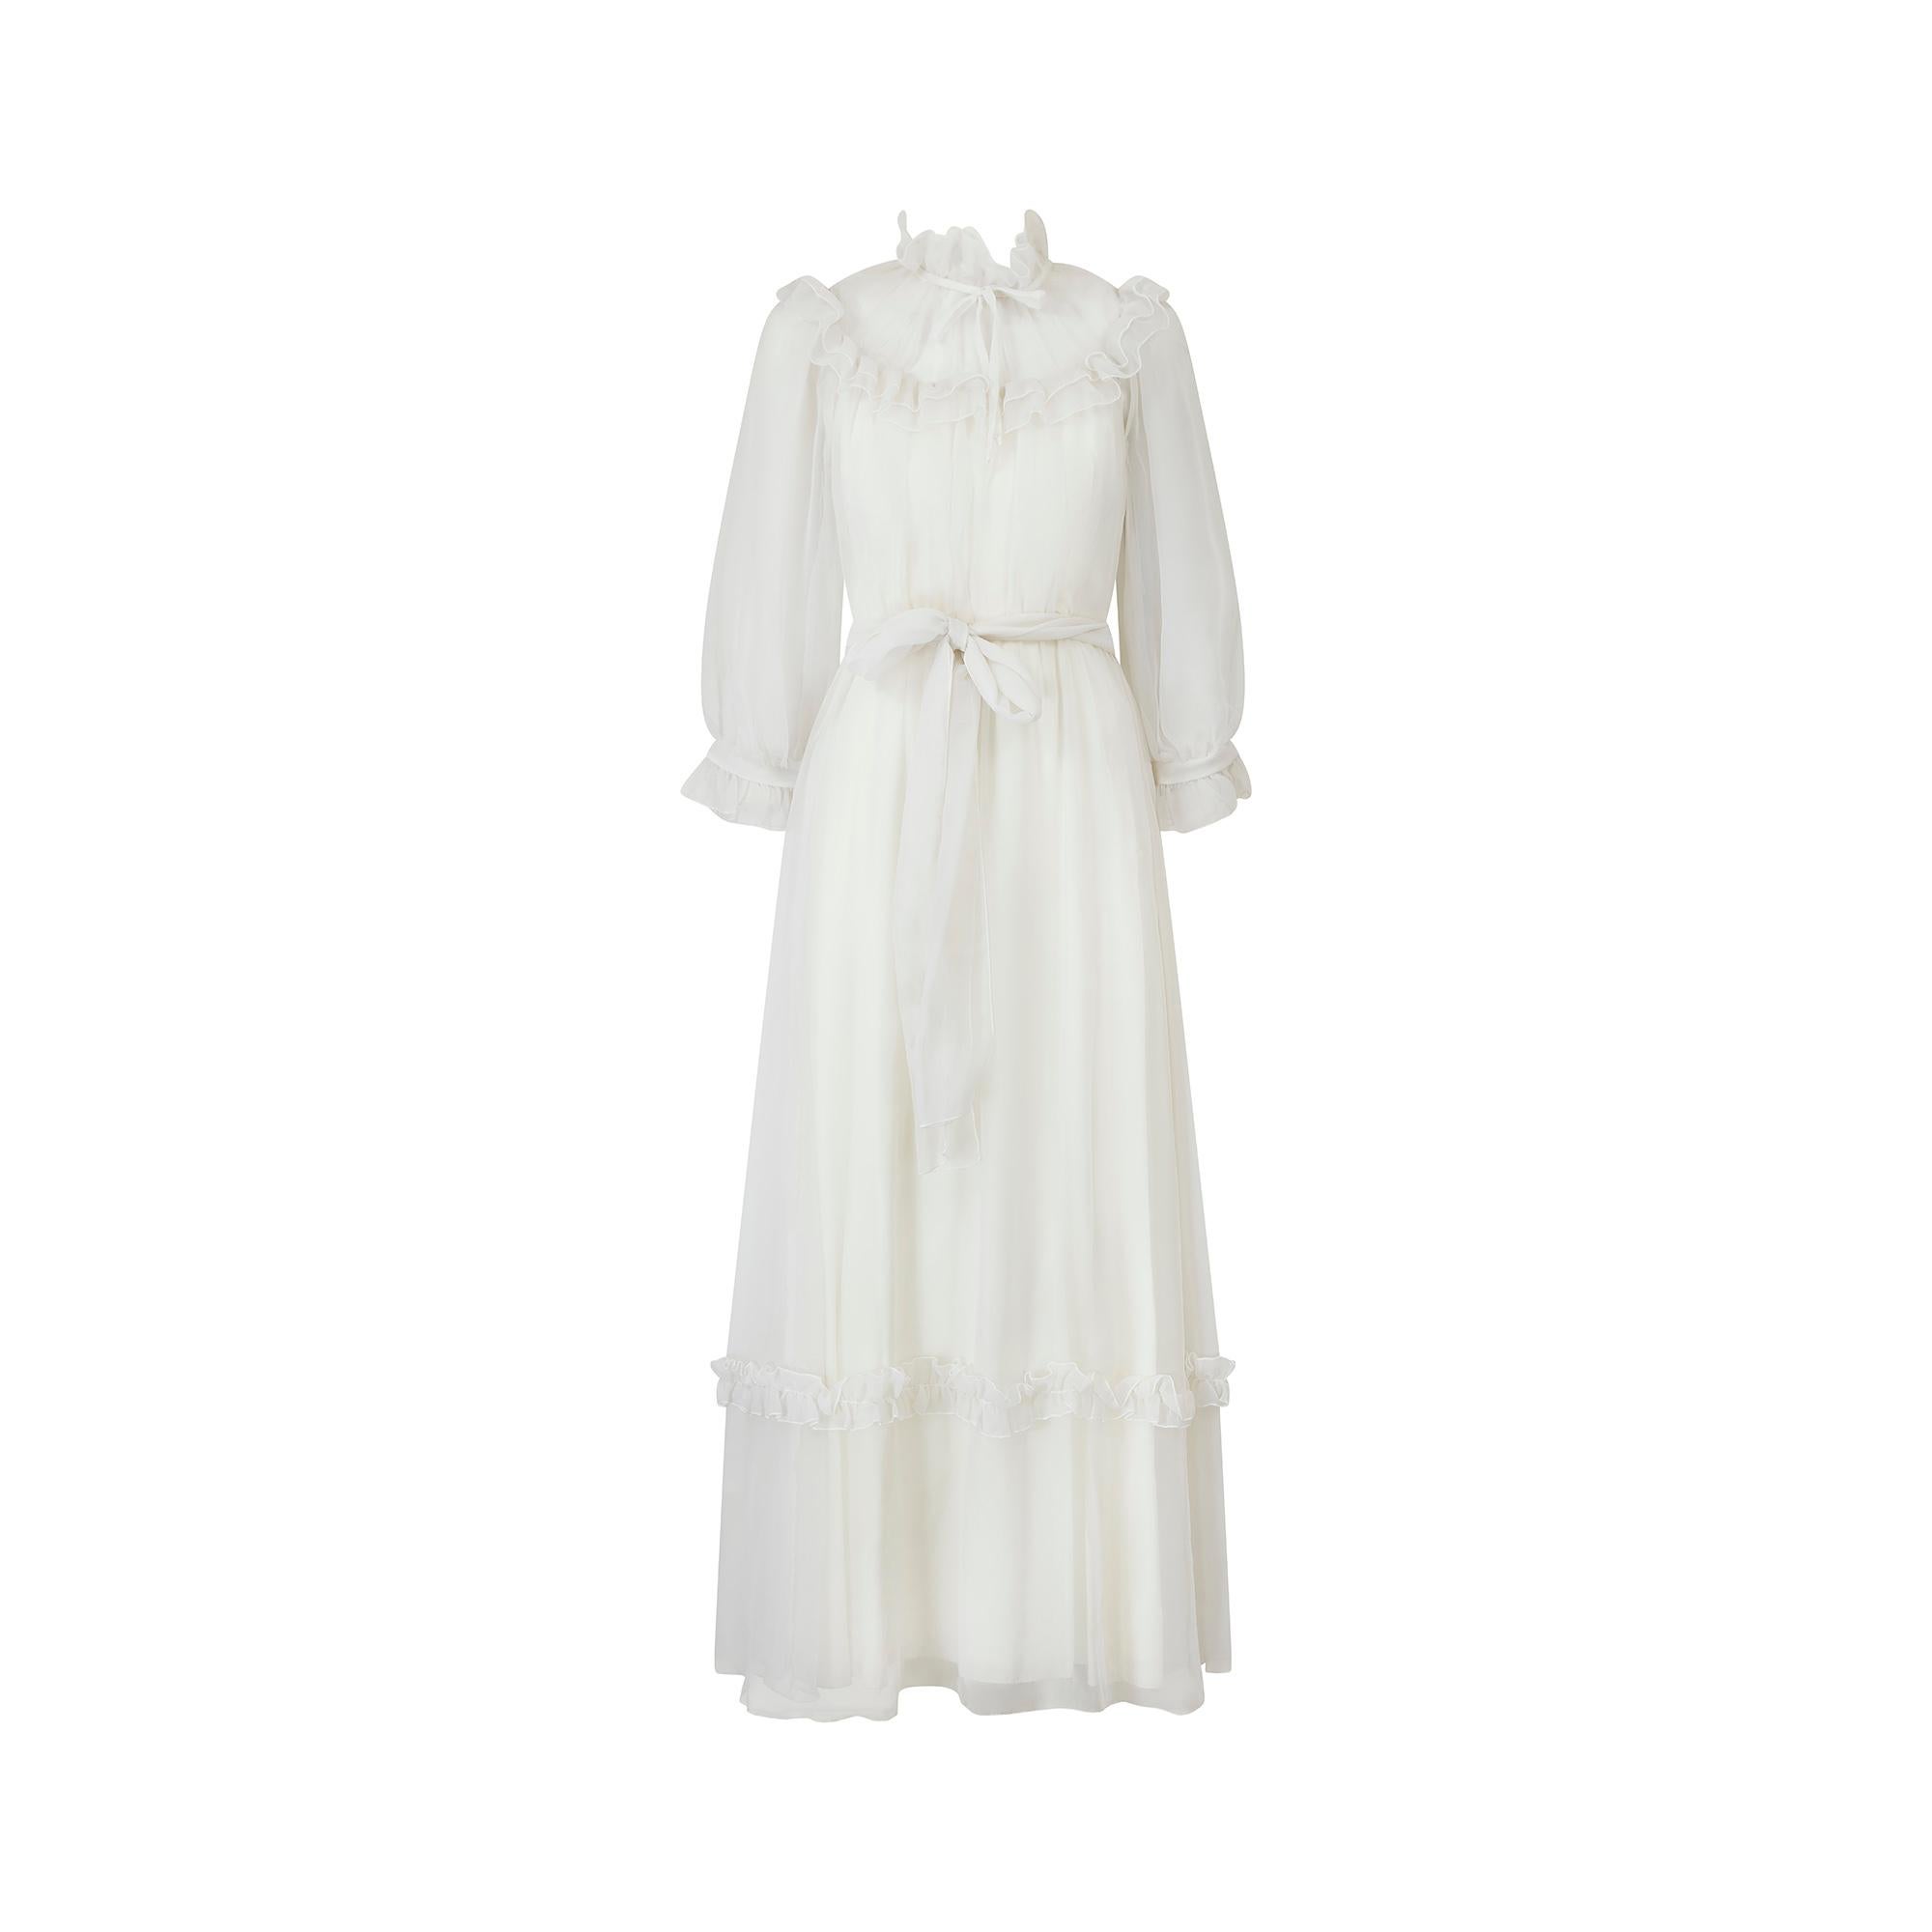 Dieses romantische Georgette-Brautkleid ist von Vera Mont, einem Designer für besondere Anlässe. Wir haben im Laufe der Jahre mehrere frühe Stücke dieses Designers erworben, und sie enttäuschen nie. Sie sind immer sehr gut verarbeitet, mit